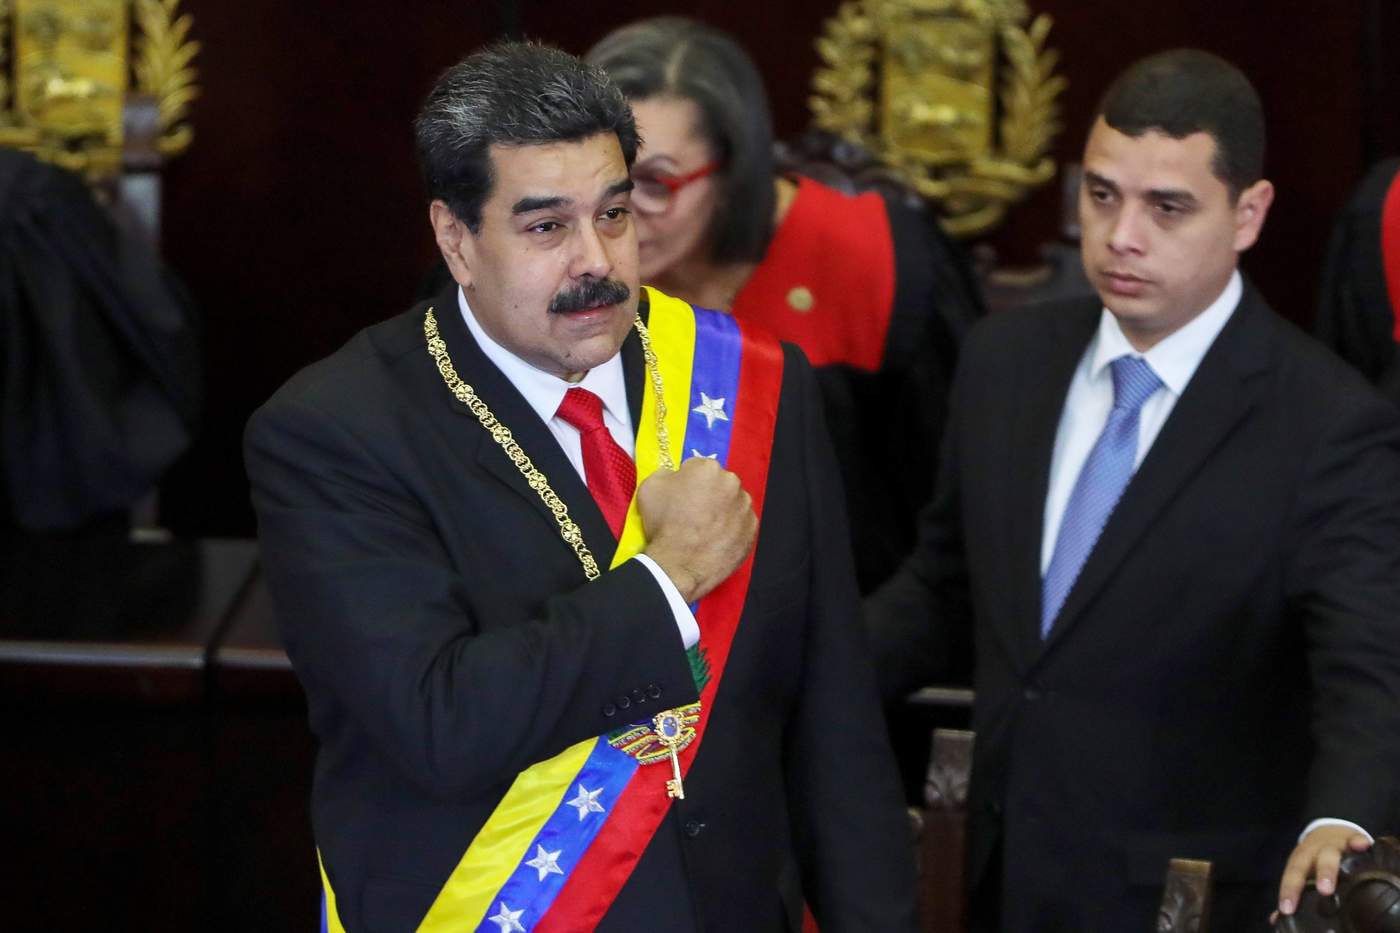 'He decidido regresar todo el personal, diplomático y consular de nuestro país en el exterior y cerrar la embajada y todos los consulados en Estados Unidos', dijo Maduro. (EFE) 